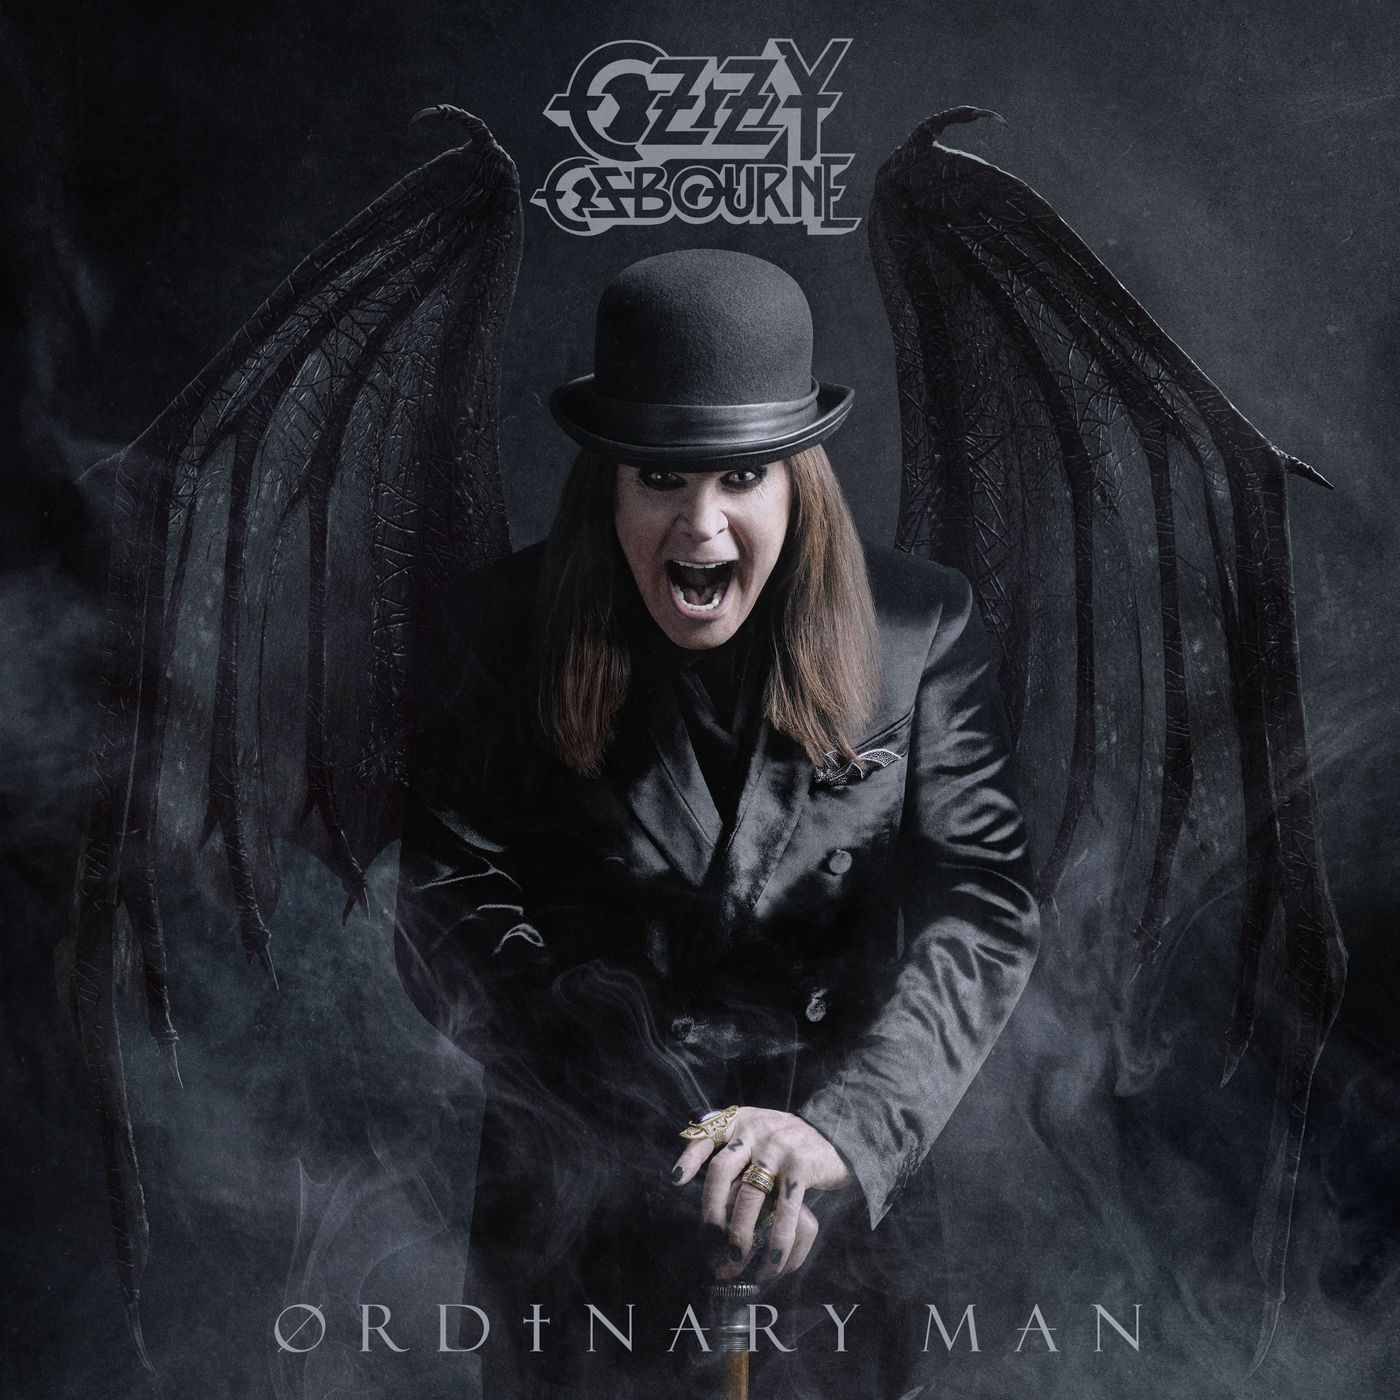 Ozzy Osbourne - Ordinary Man (2020) [FLAC 24bit/48kHz]